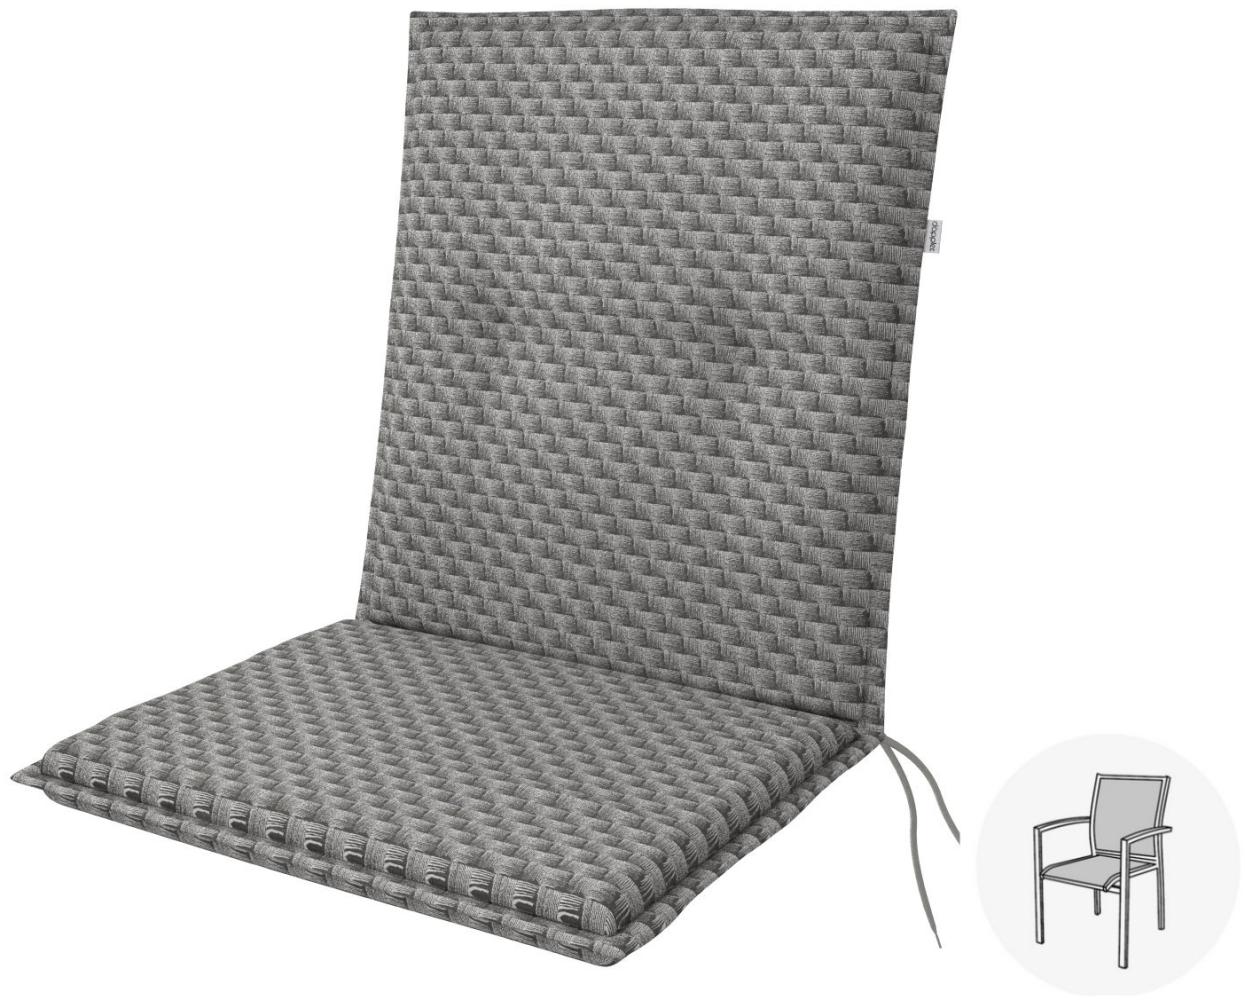 Doppler Sitzauflage "Living" Low, grau rattan, für Niederlehner (100 x 48 x 6 cm) Bild 1